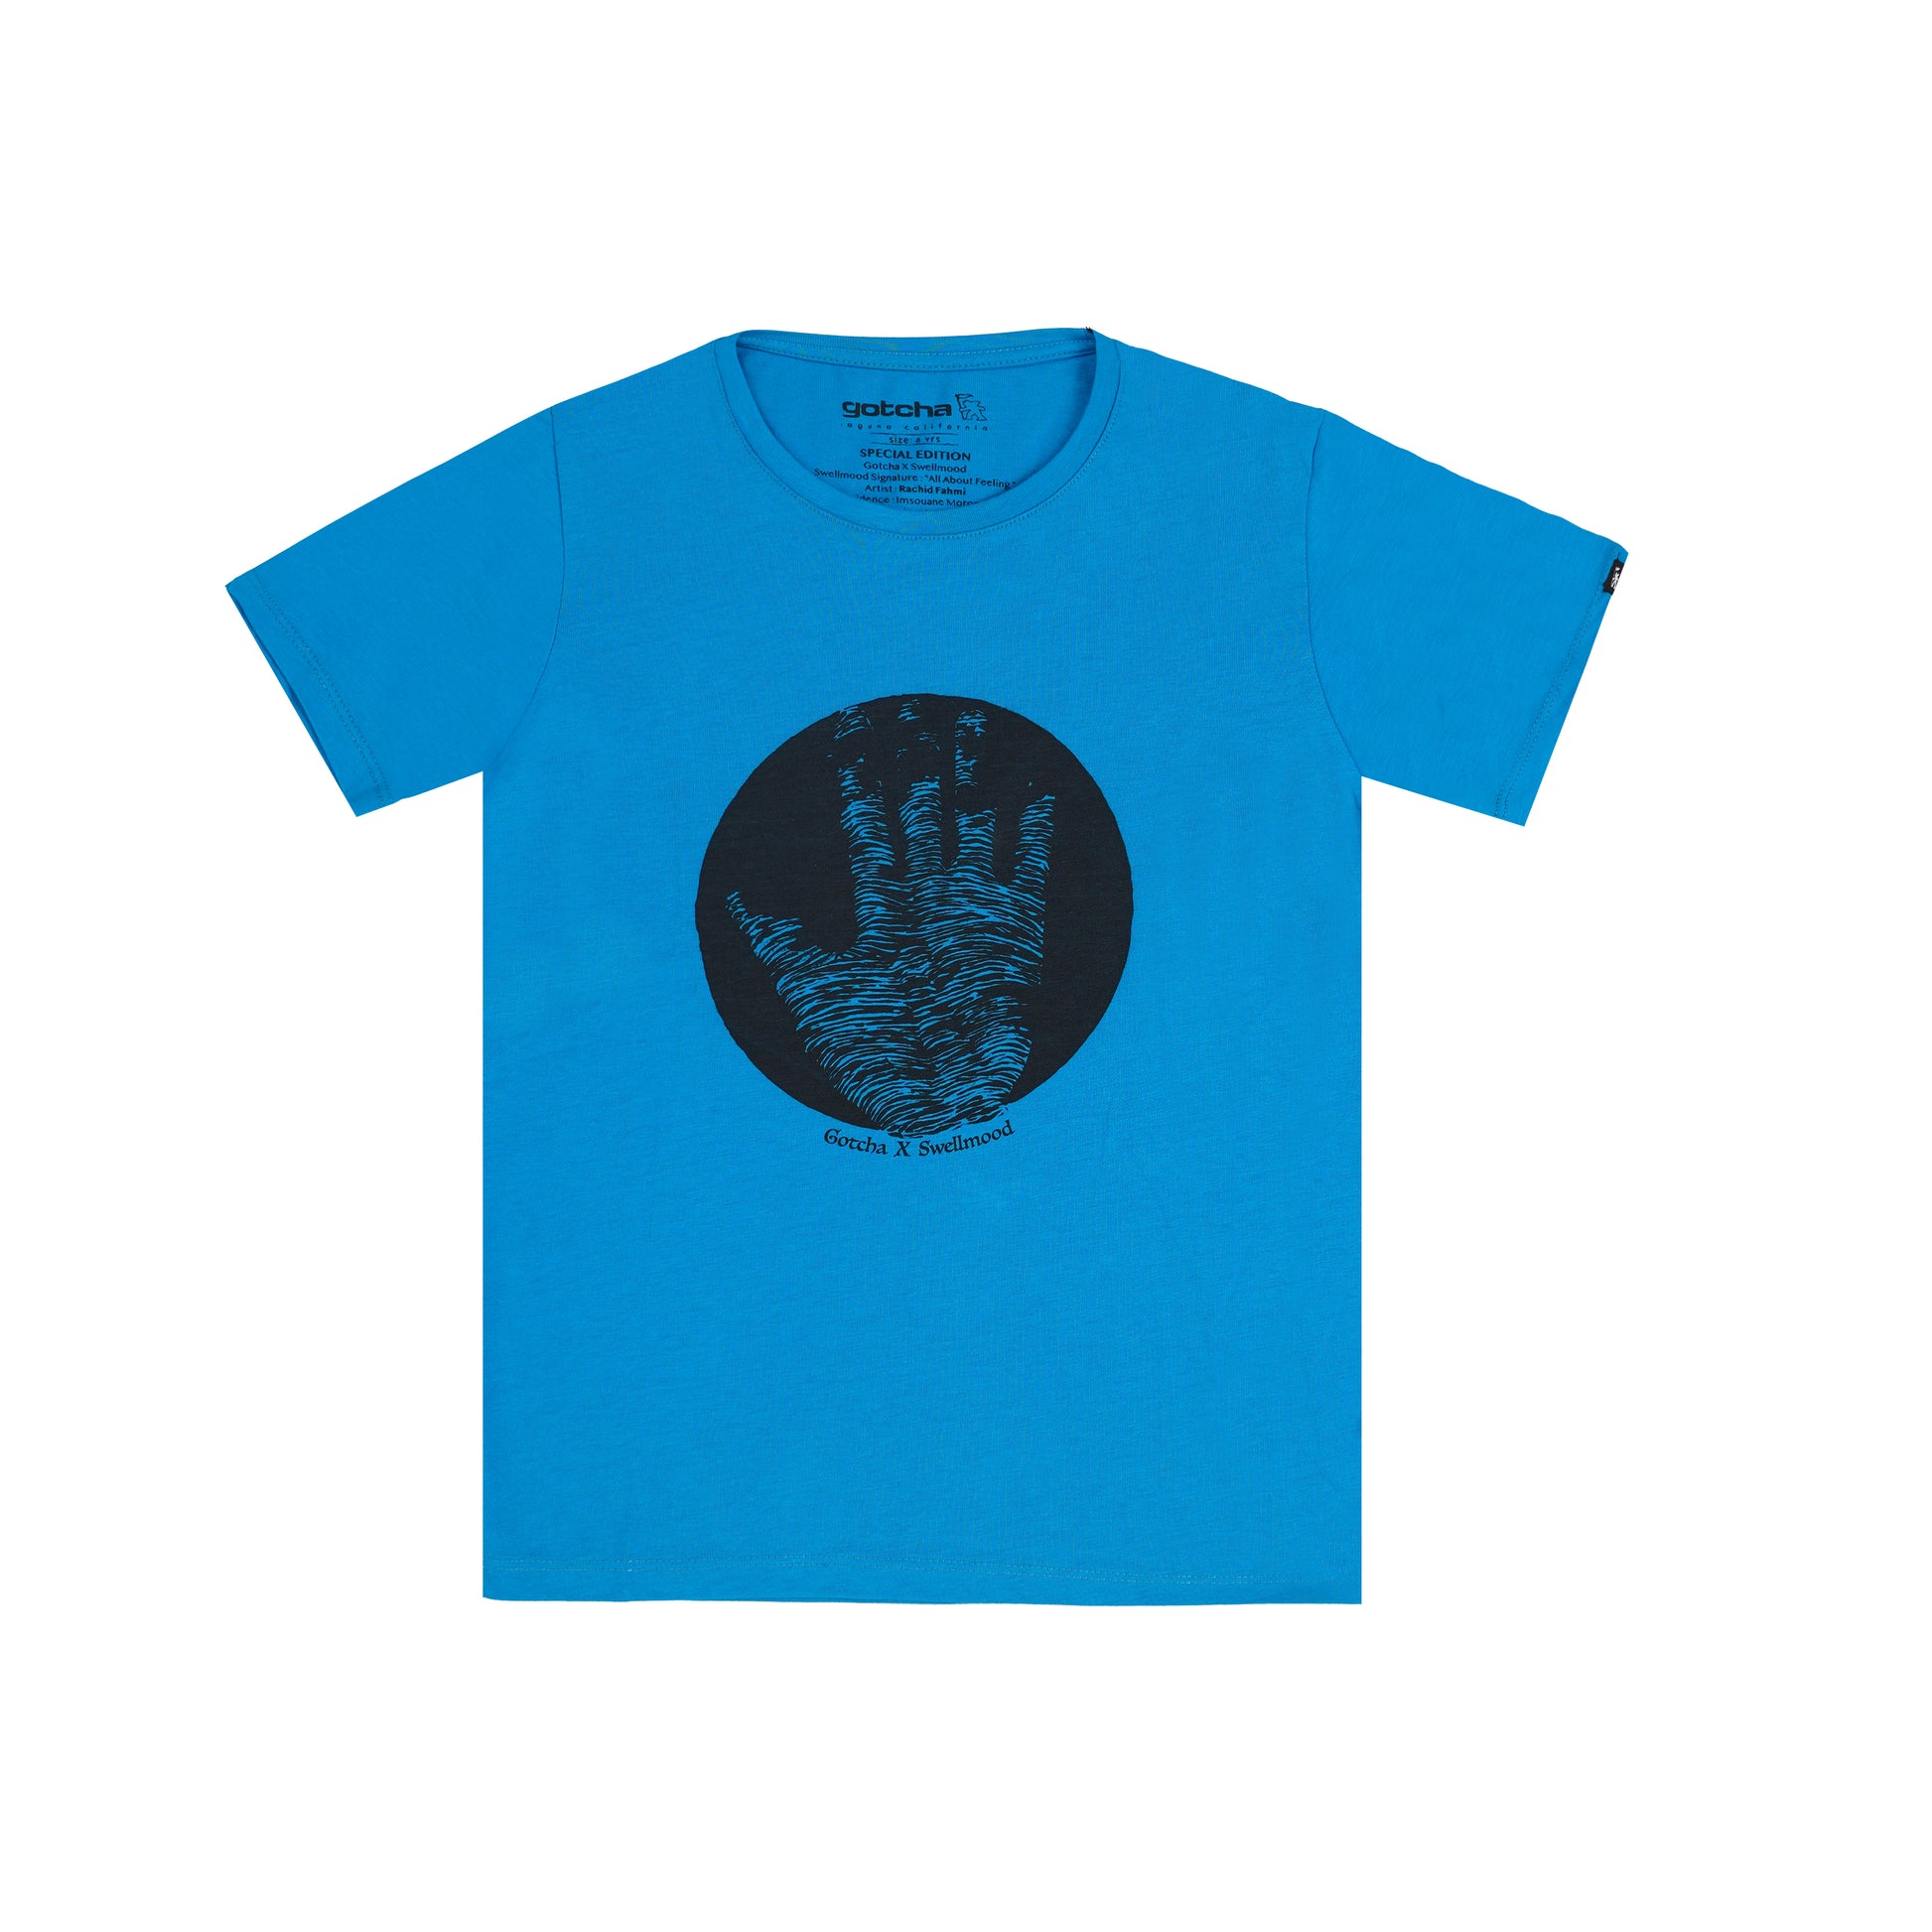  Blue Jewel T-shirt for dubai kids